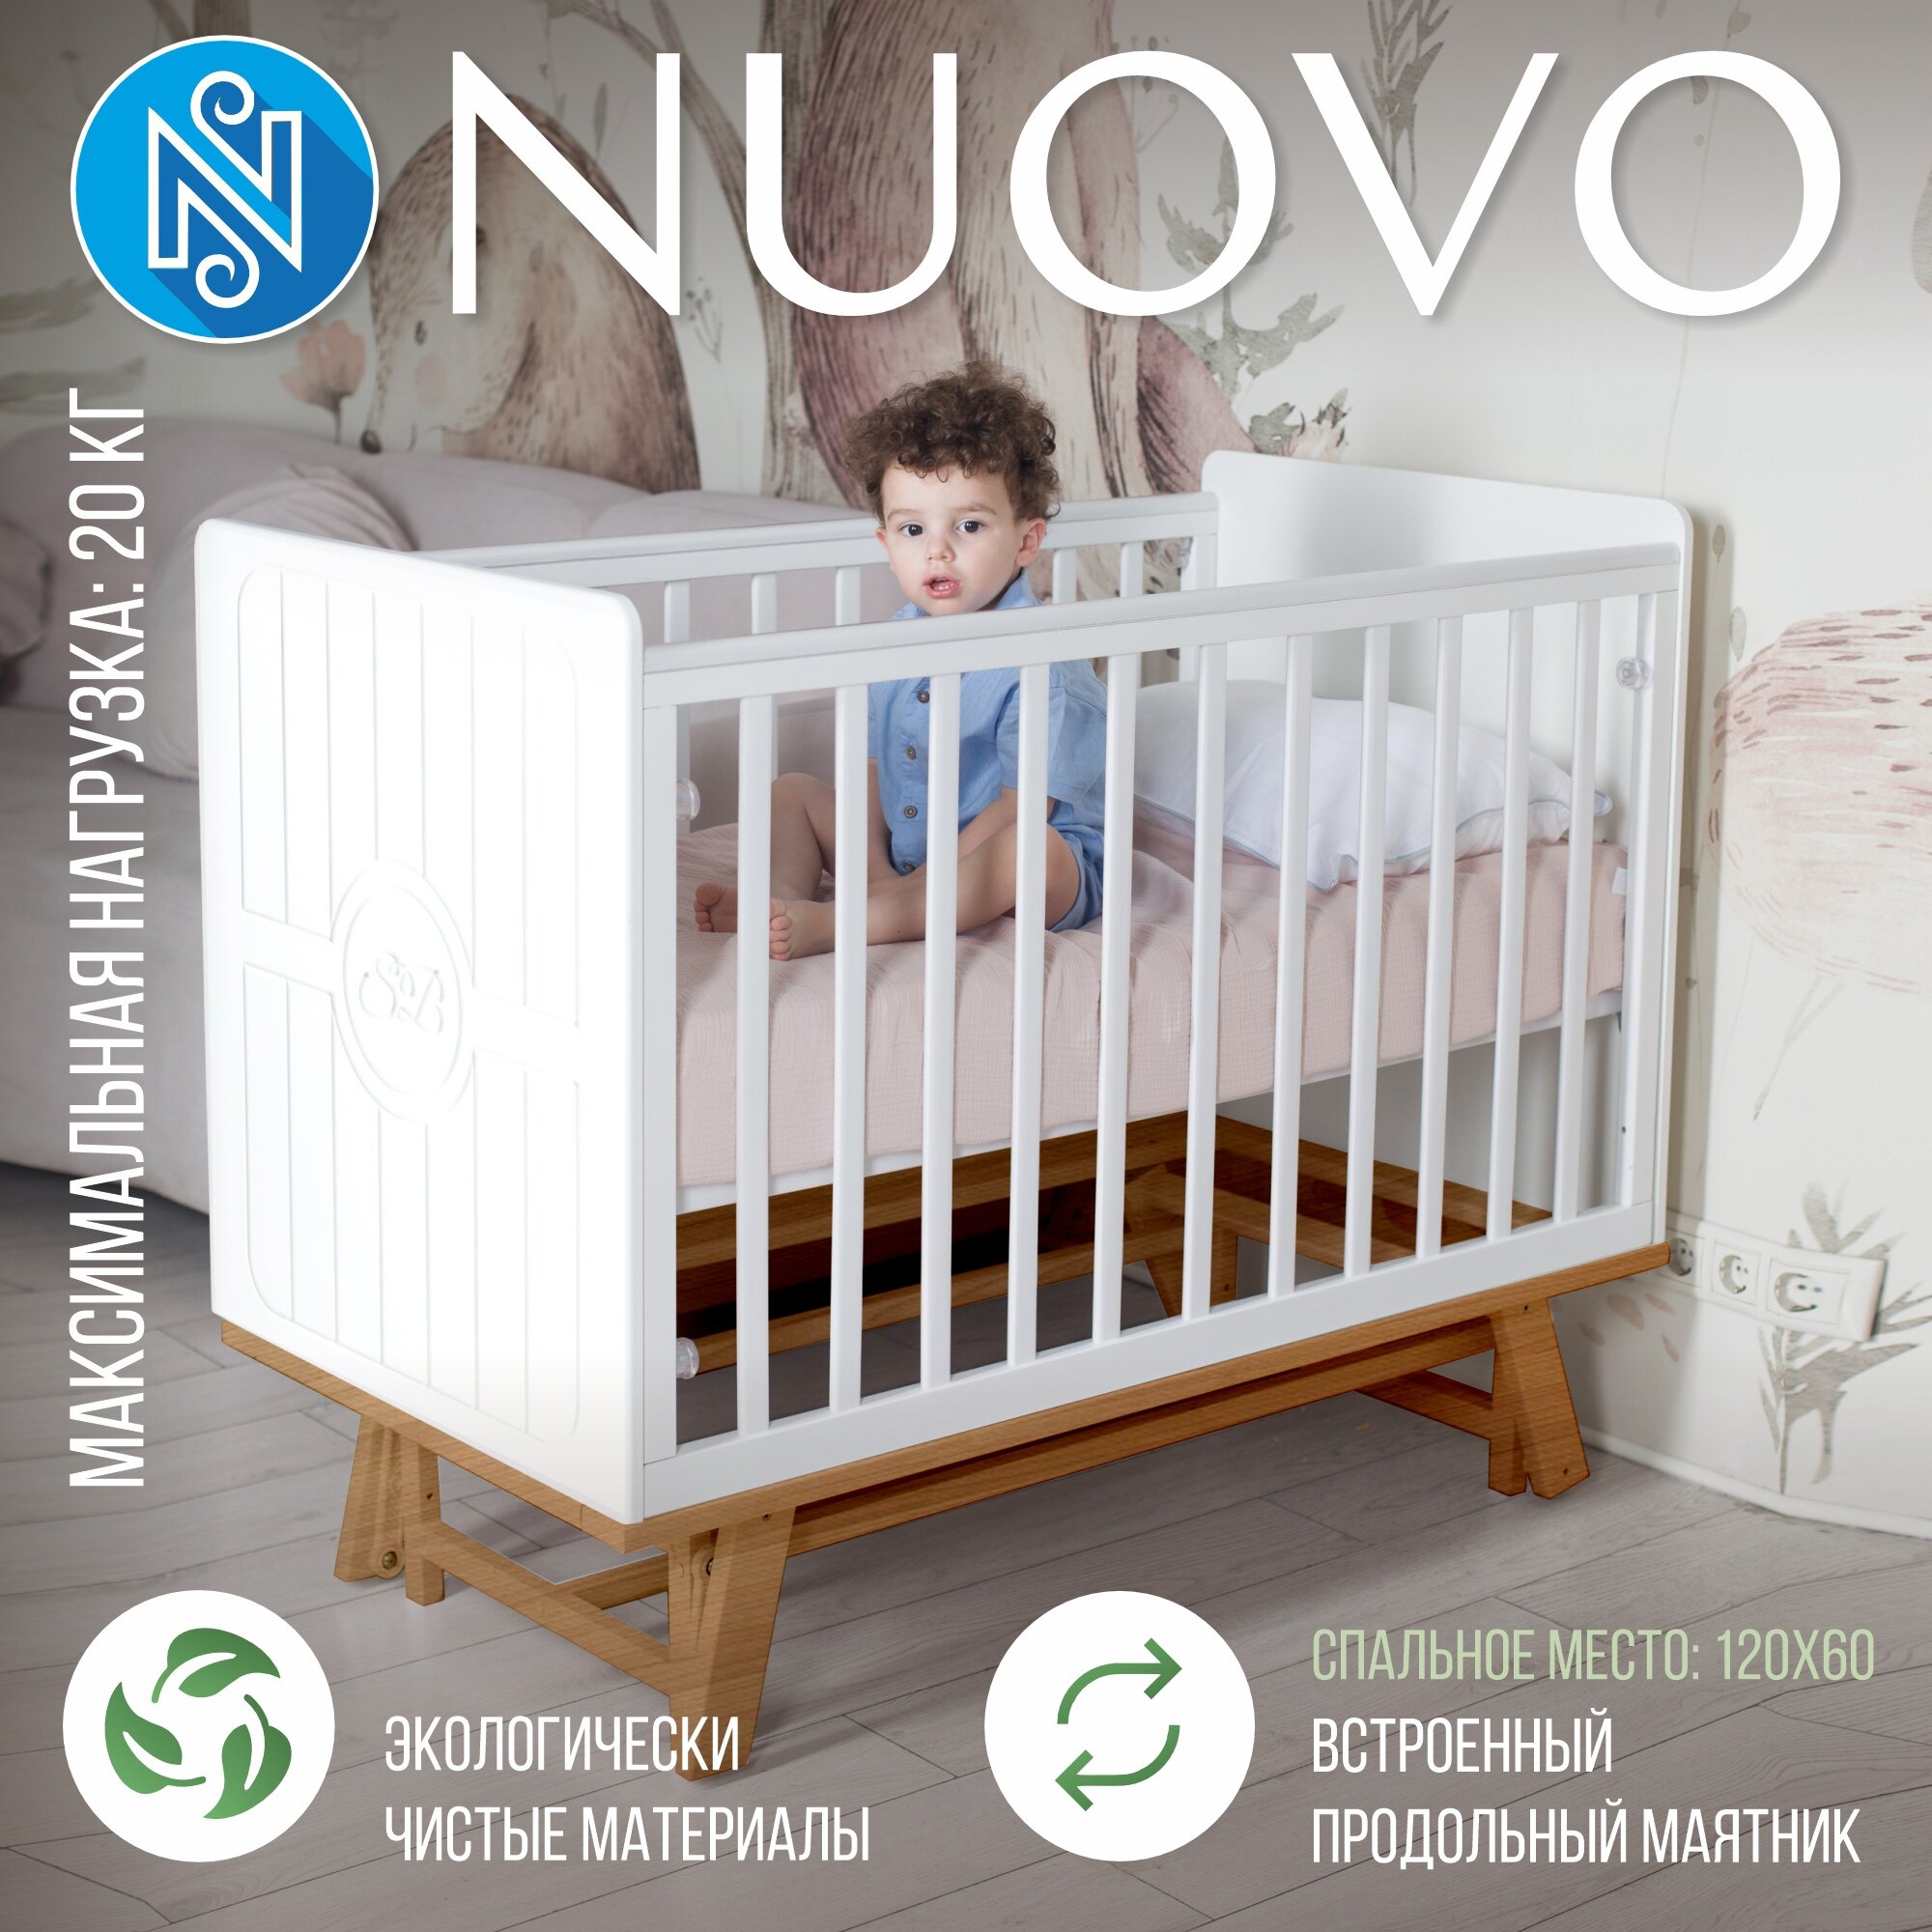 Nuovo (маятник продольный) Bianco/Naturale